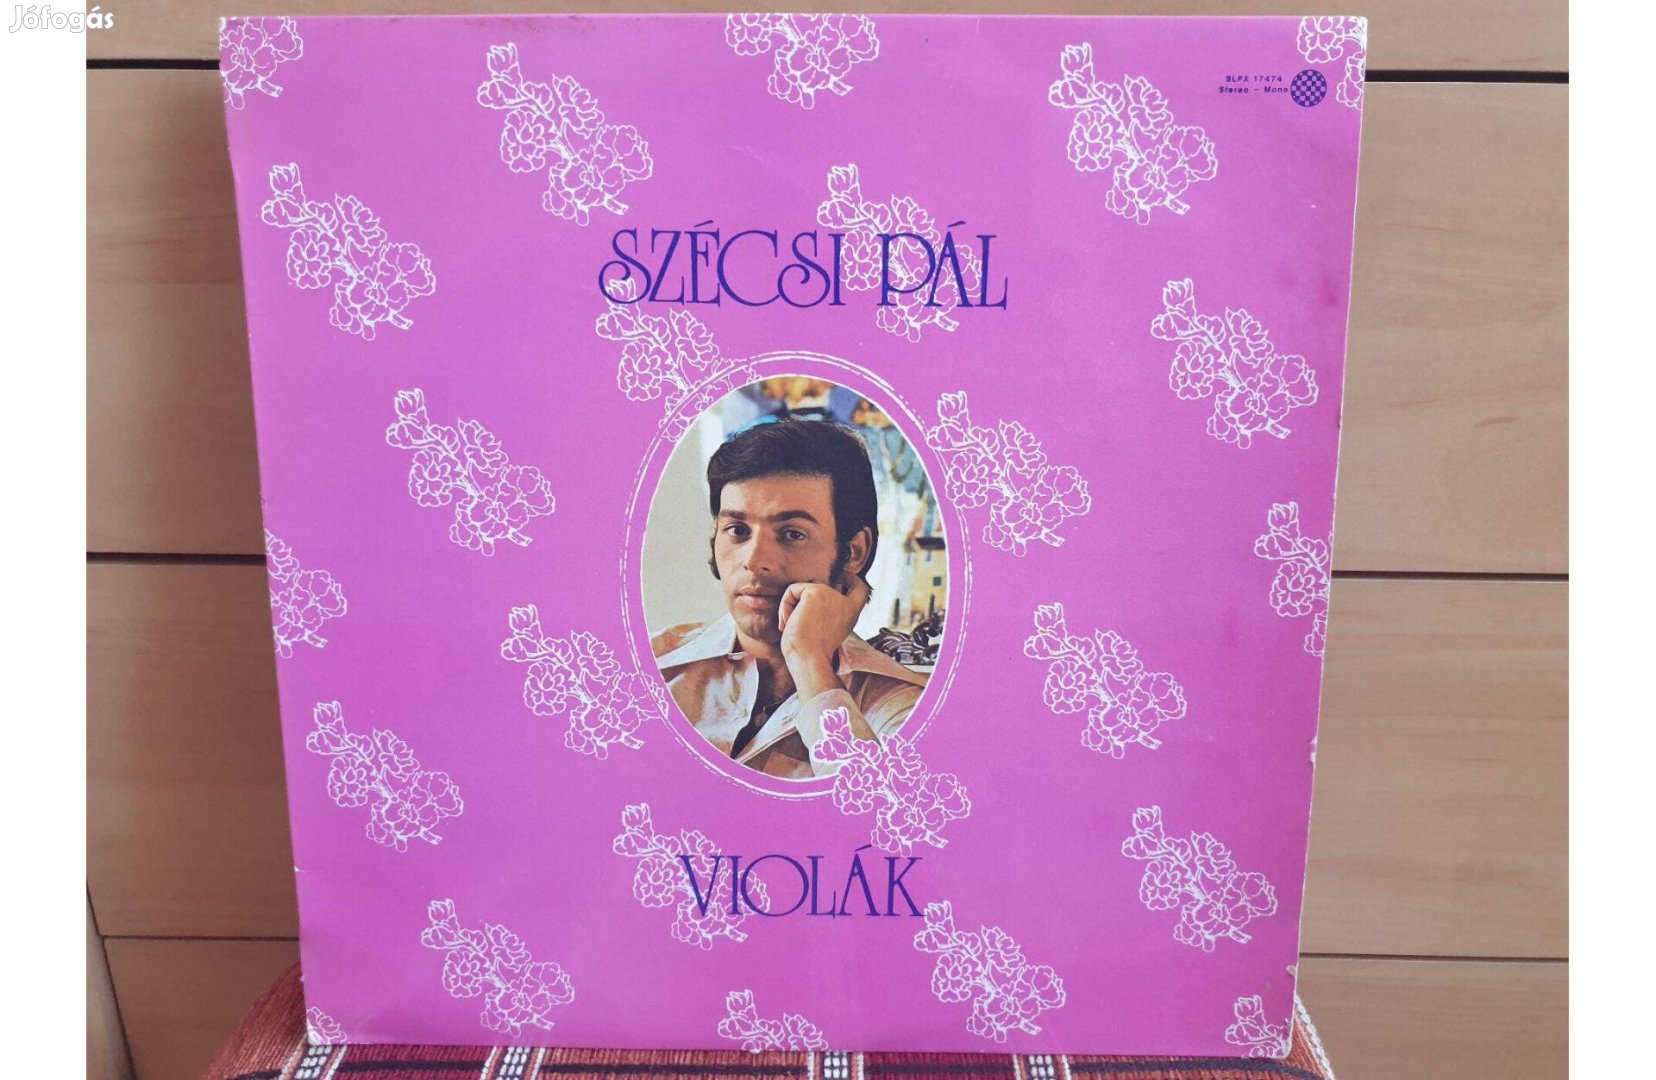 Szécsi Pál - Violák hanglemez bakelit lemez Vinyl